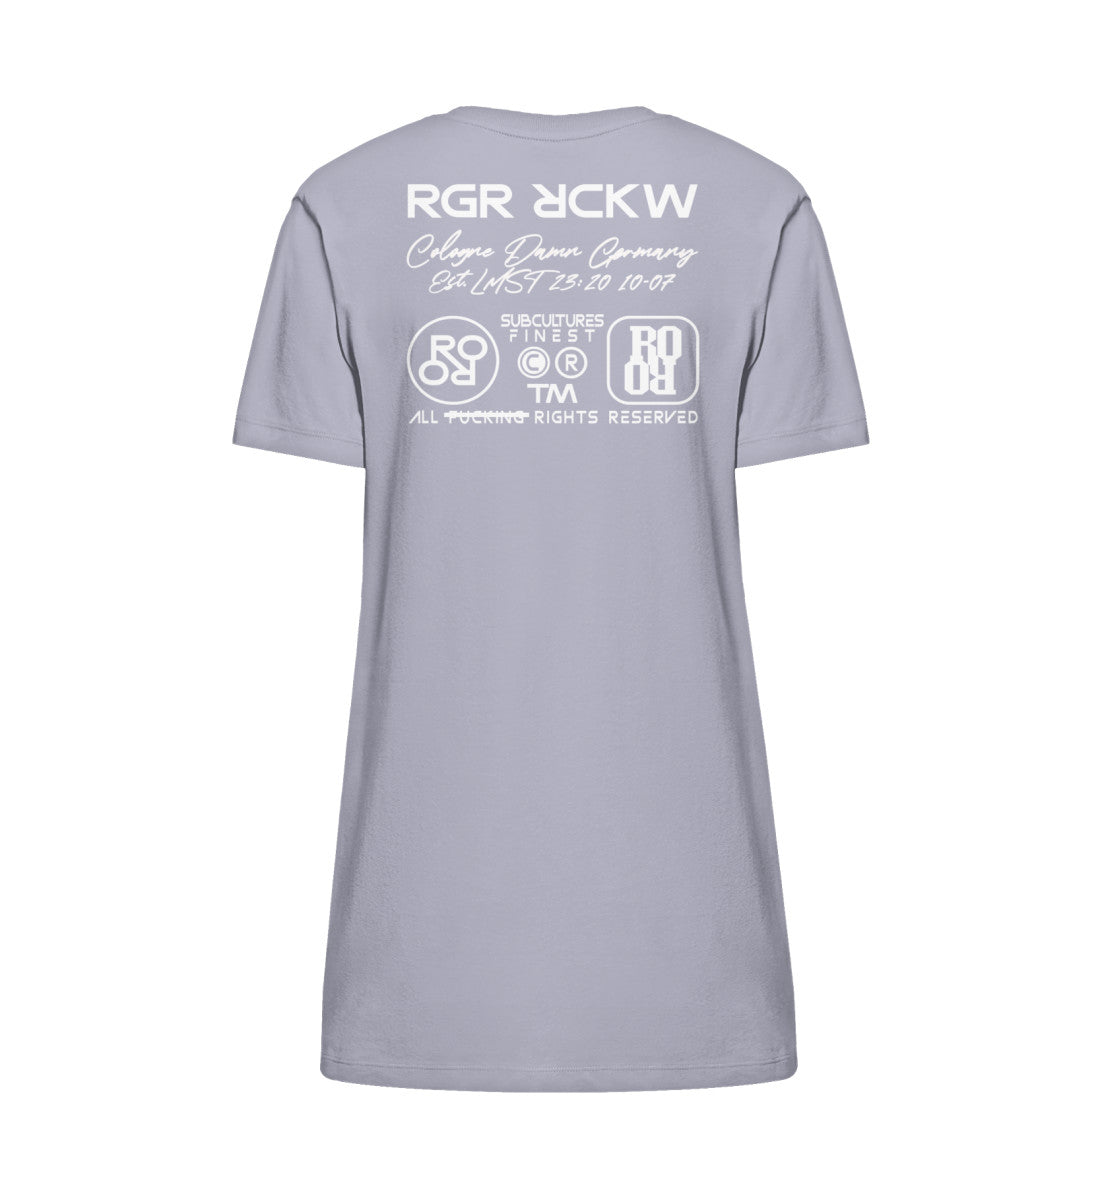 Lavender farbiges T-Shirt Kleid mit Design Druck der Roger Rockawoo Kollektion earthlings welcome